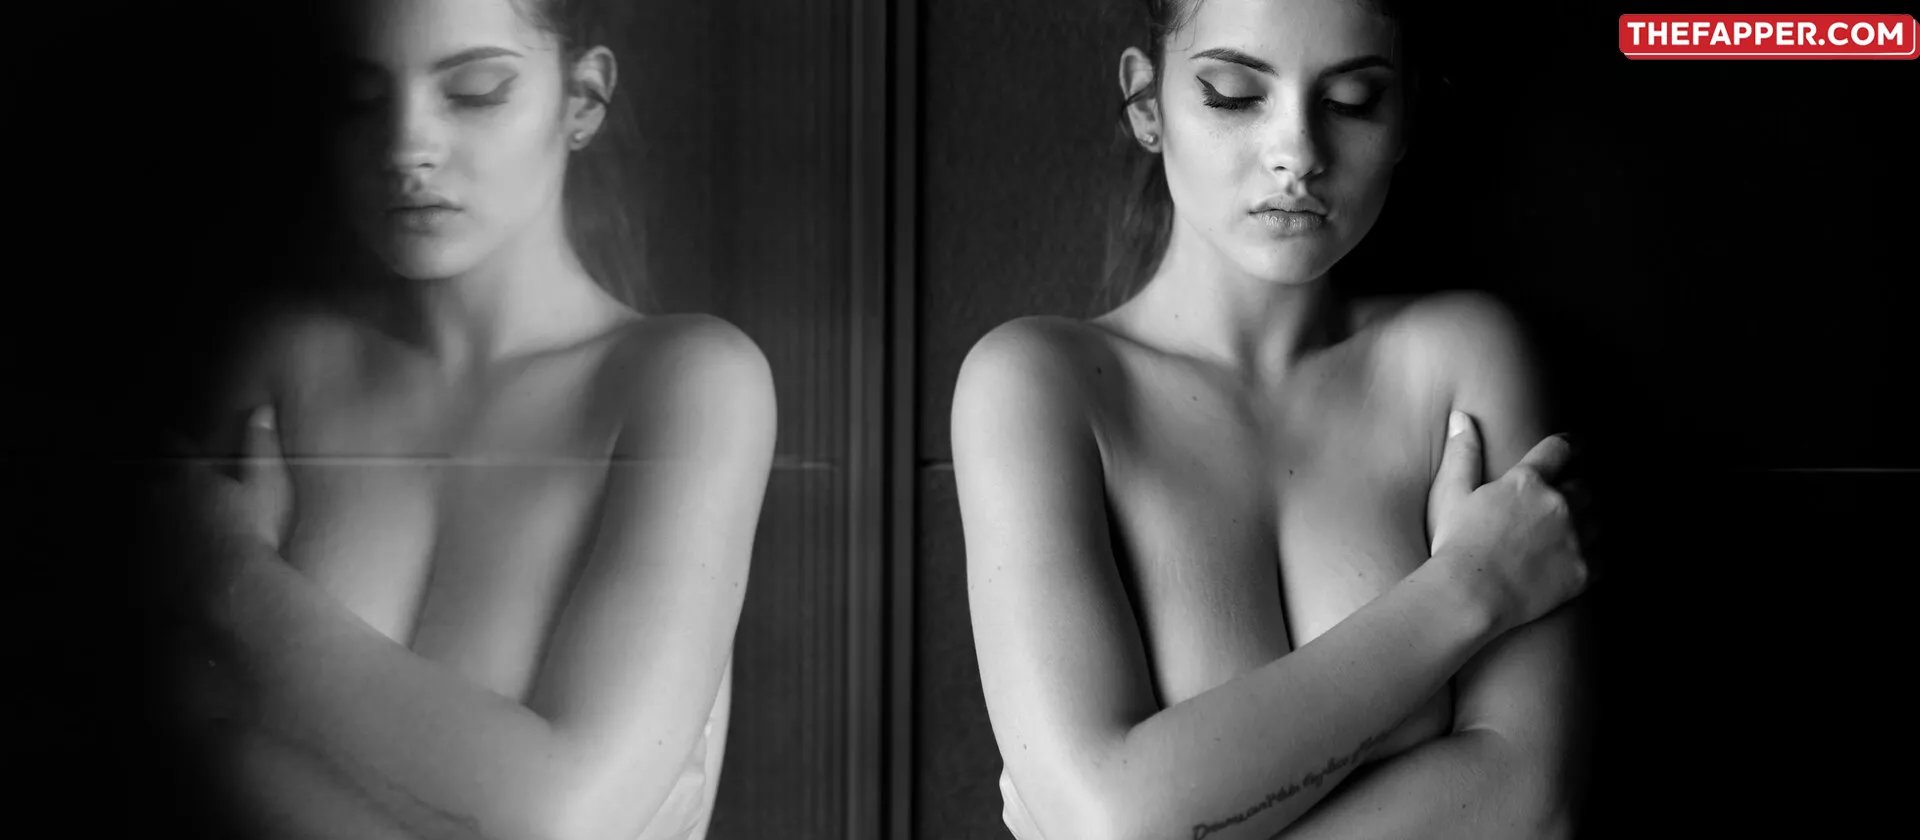 Judit Guerra  Onlyfans Leaked Nude Image #SsX8cmp4kF